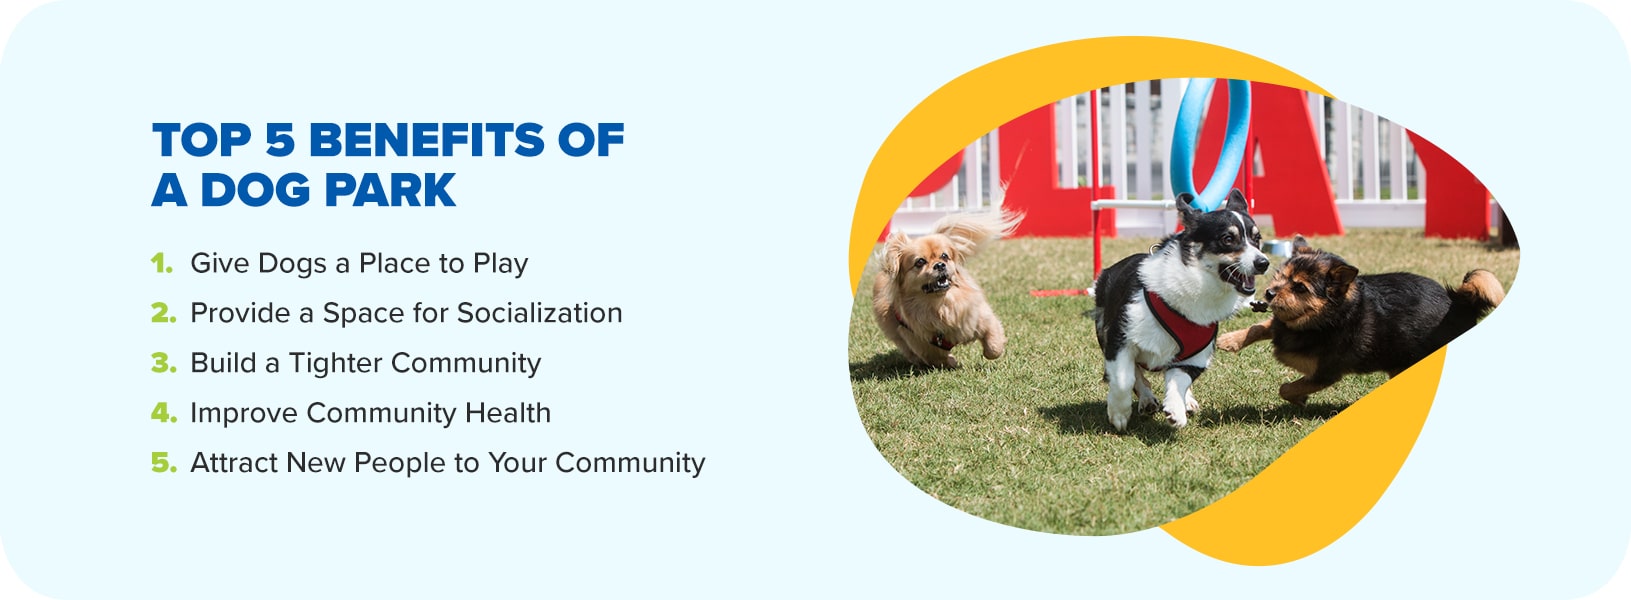 Benefits of Dog Parks